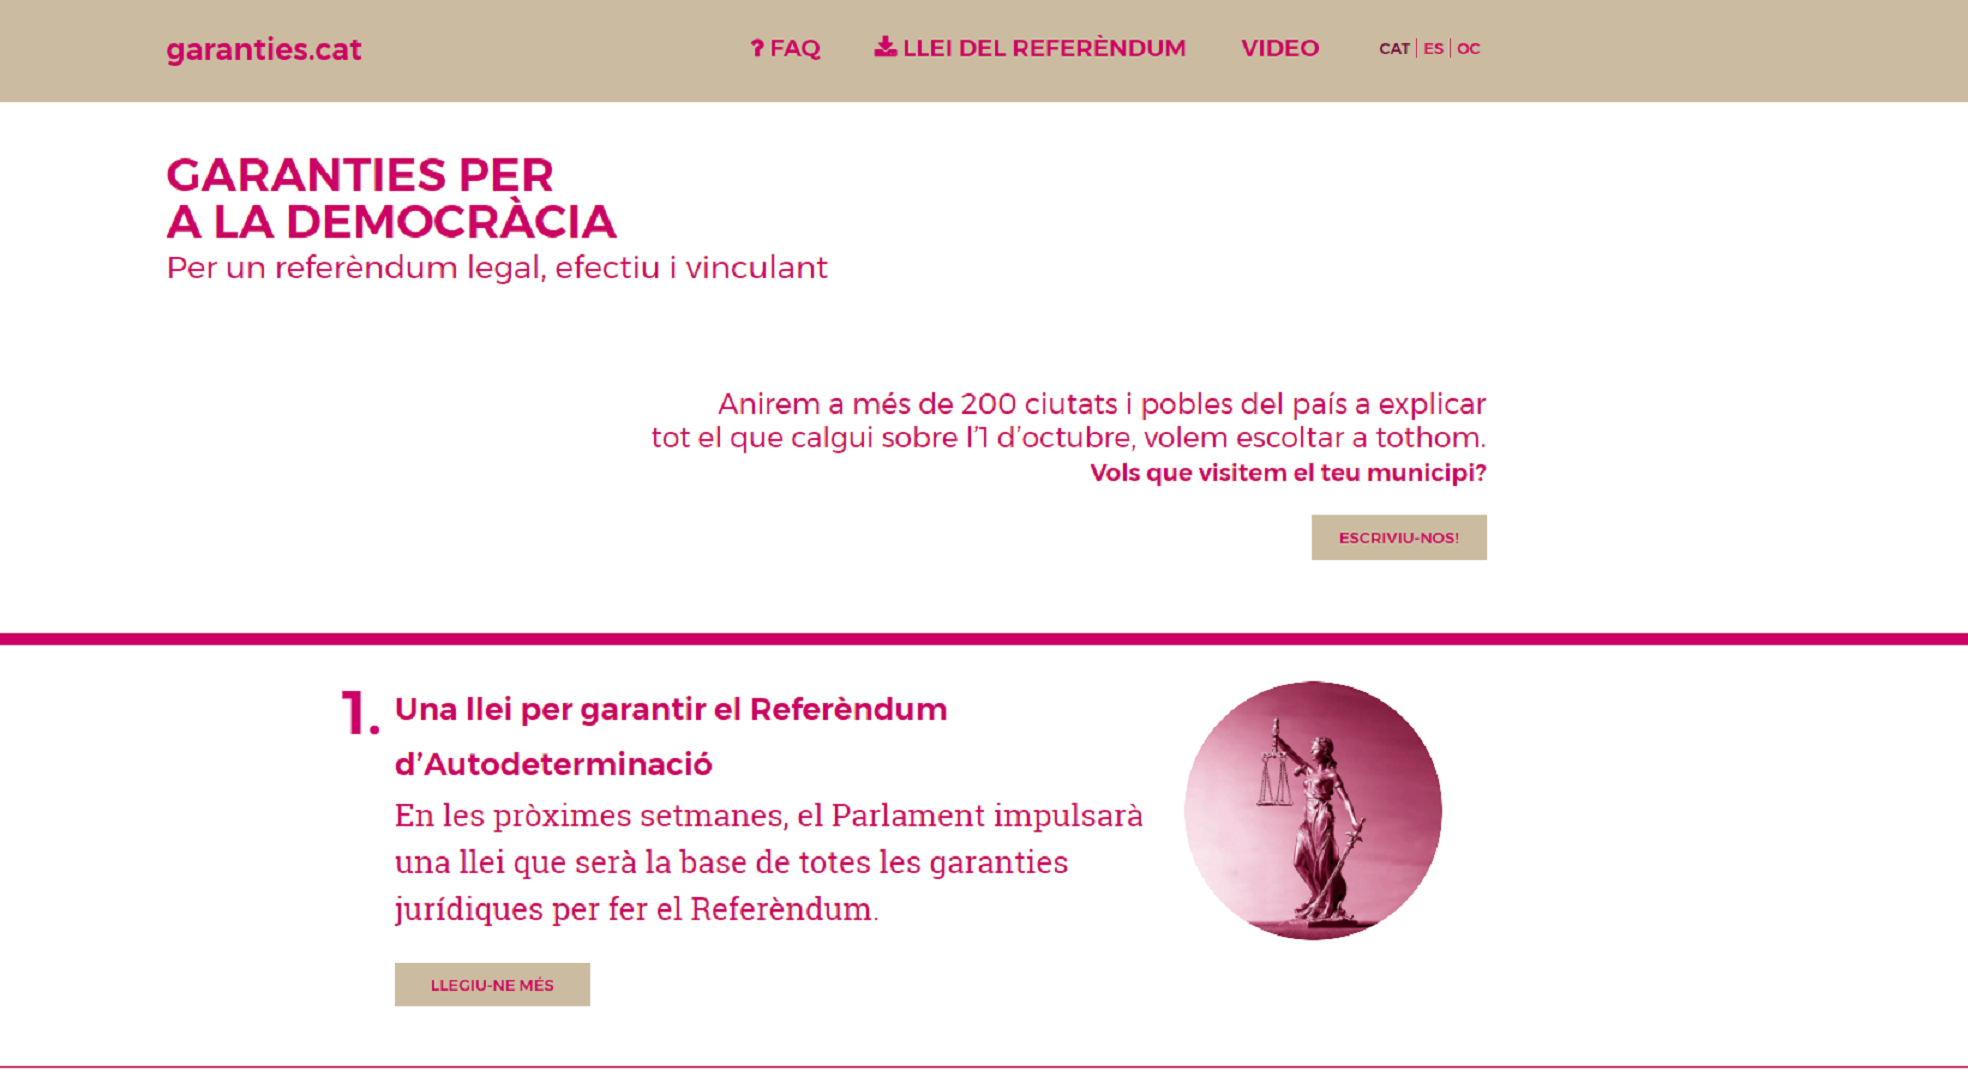 La web garanties.cat recibe 38.000 visitas y 900 preguntas en una semana